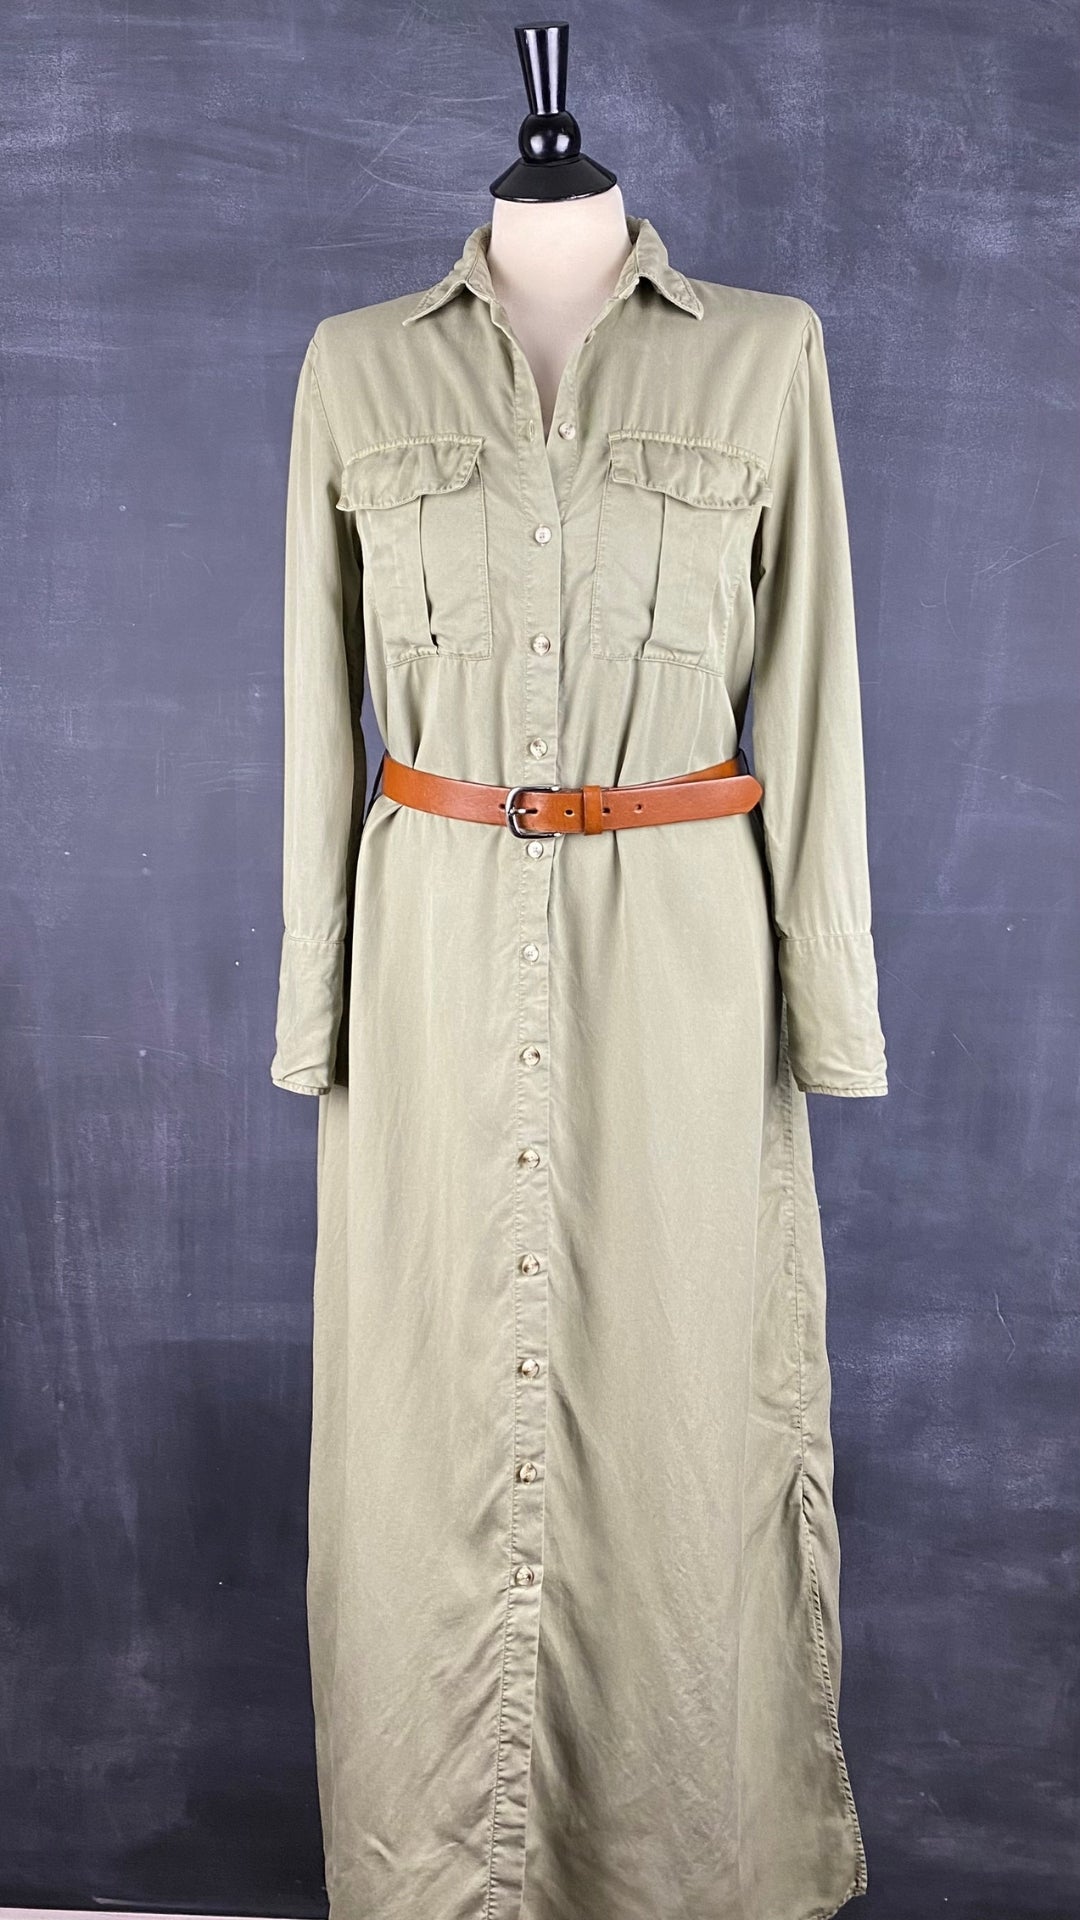 Robe chemisier longue kaki/olive doux en lyocell Massimo Dutti, taille 6. Vue de la robe avec une ceinture.